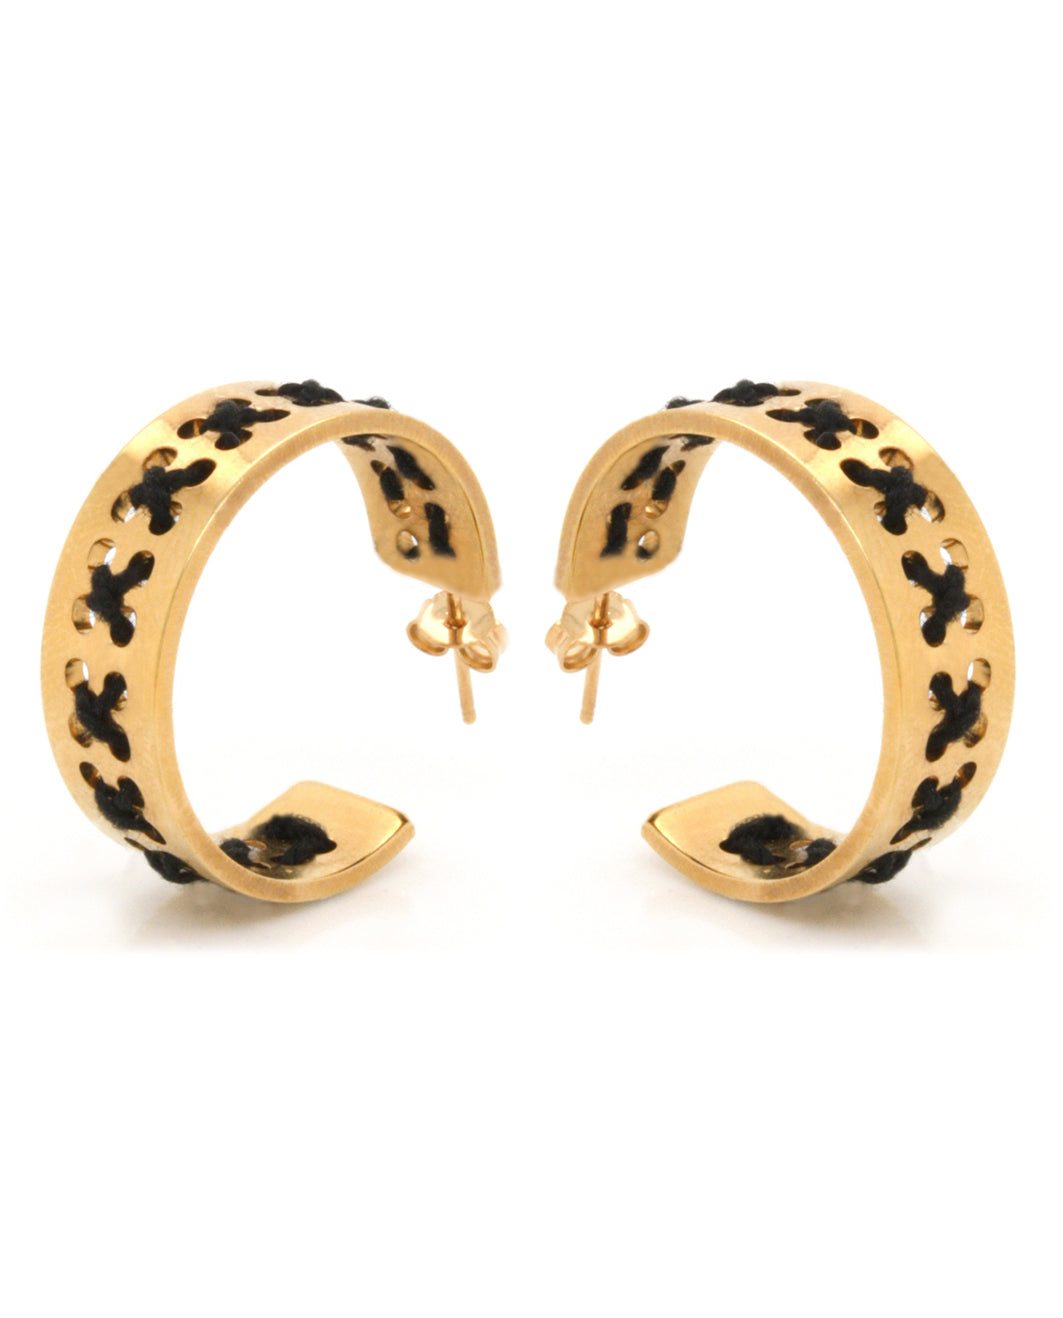 Stavrovelonia earrings